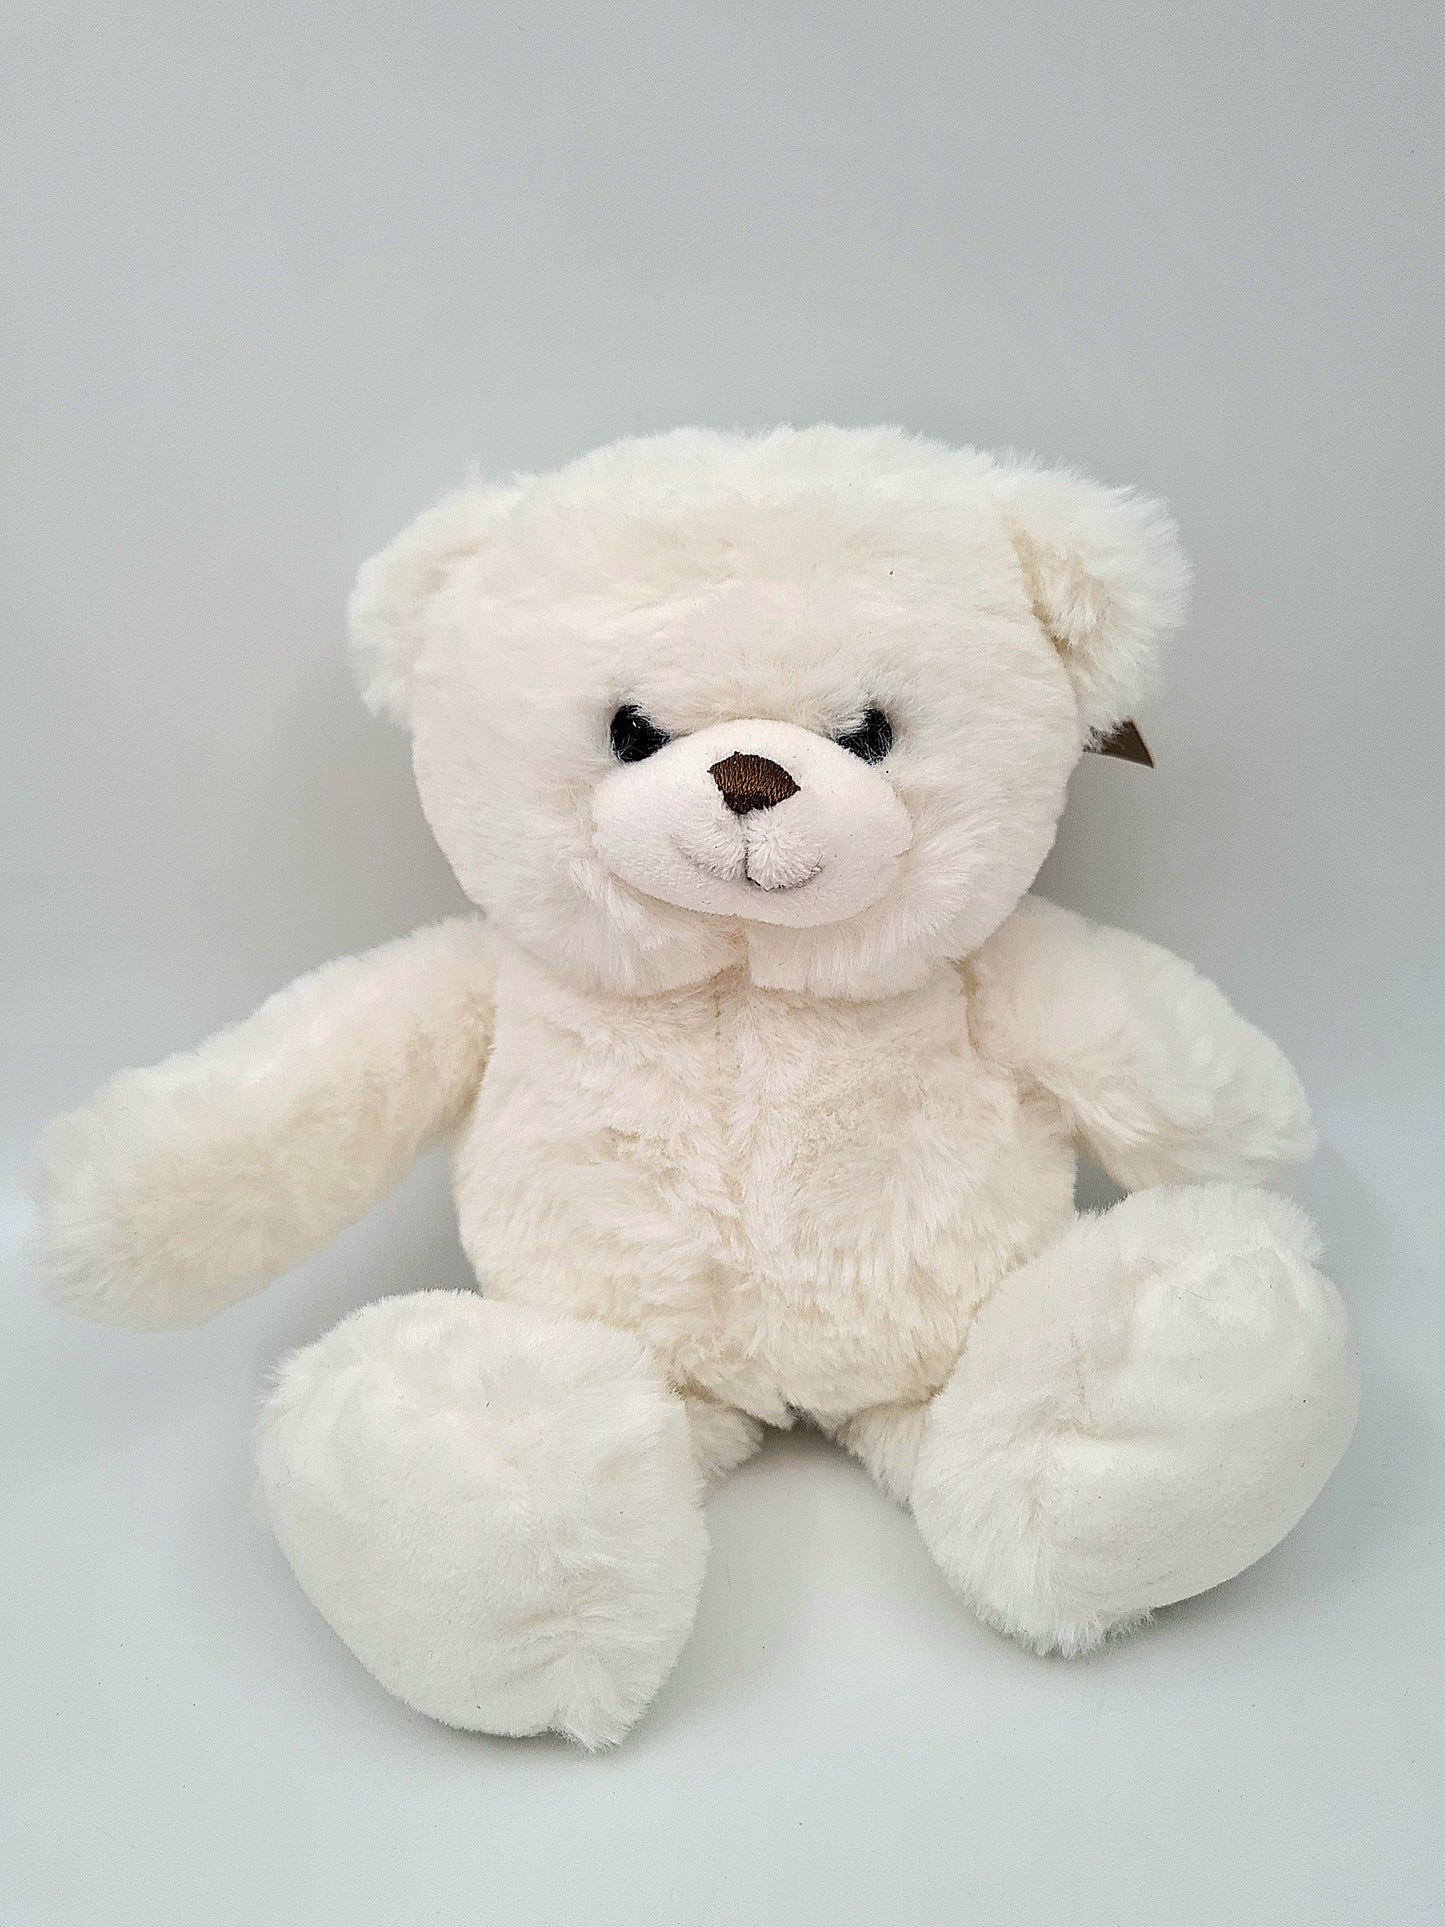 L'ours en peluche - Teddy bear